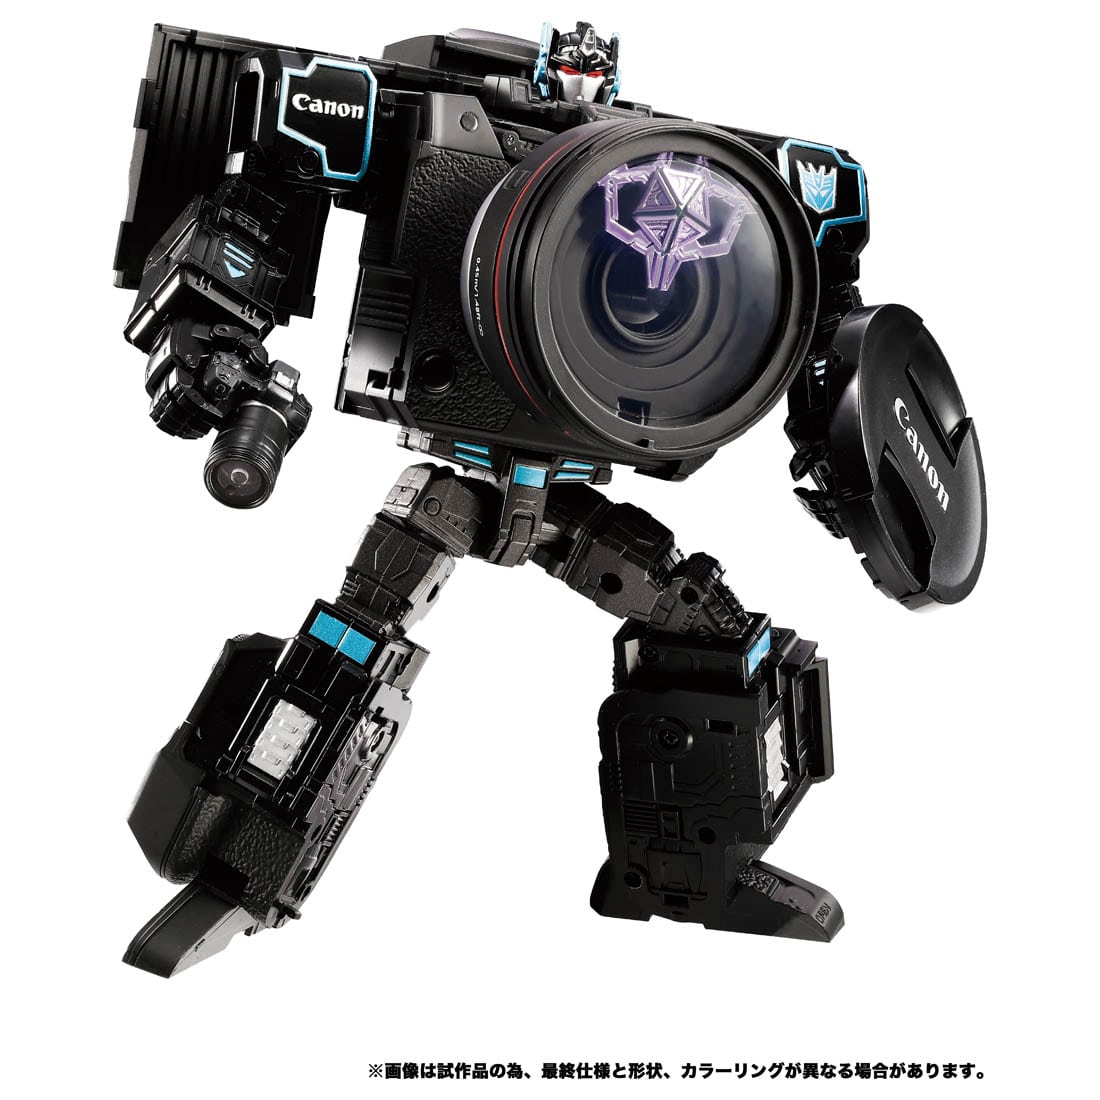 トランスフォーマー『Canon/TRANSFORMERS ネメシスプライムR5』可変可動フィギュア-001